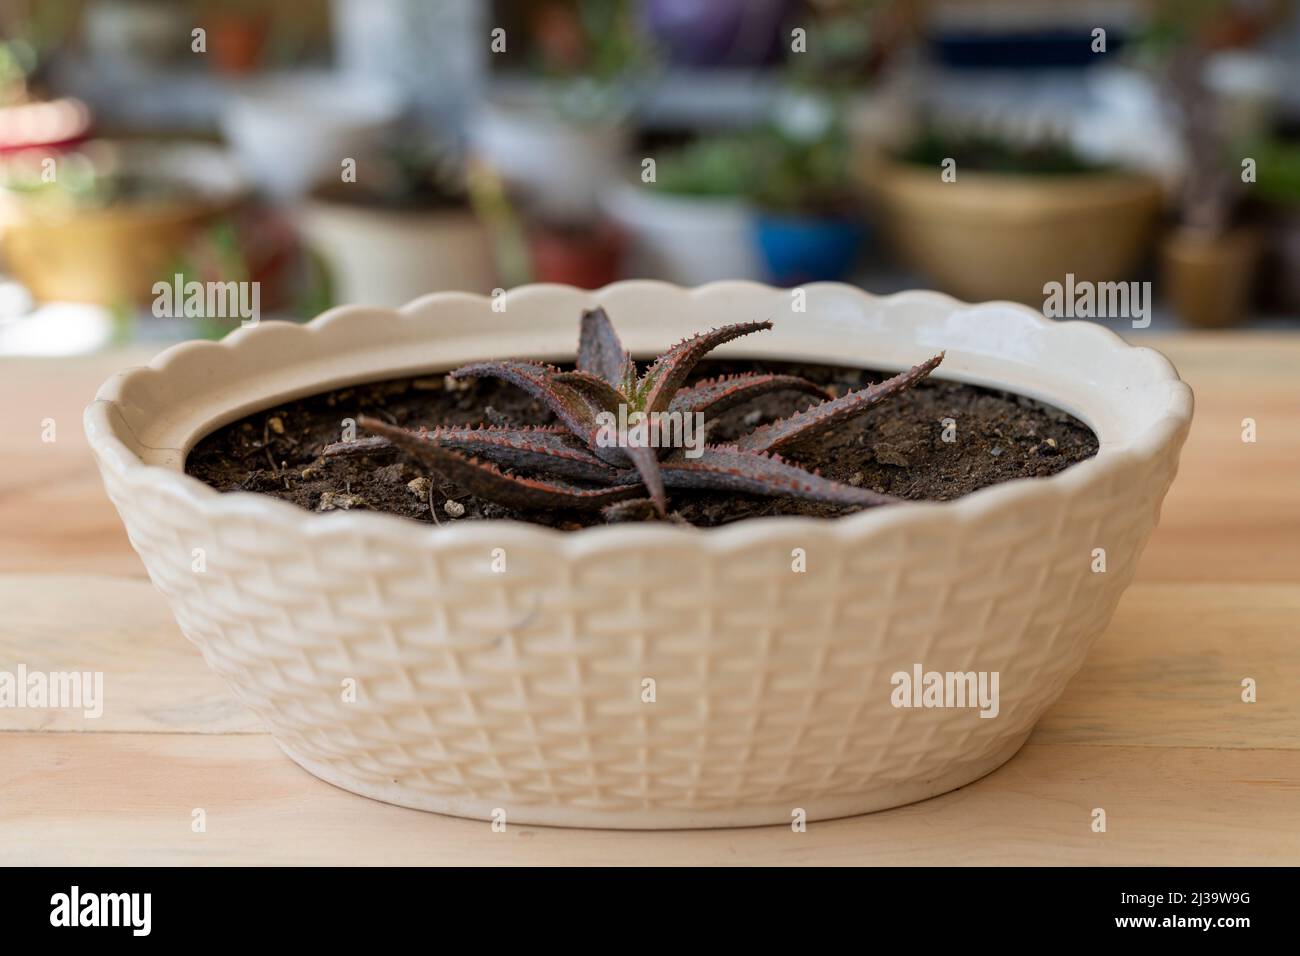 Plante hybride d'aloès dans un pot de céramique Banque D'Images